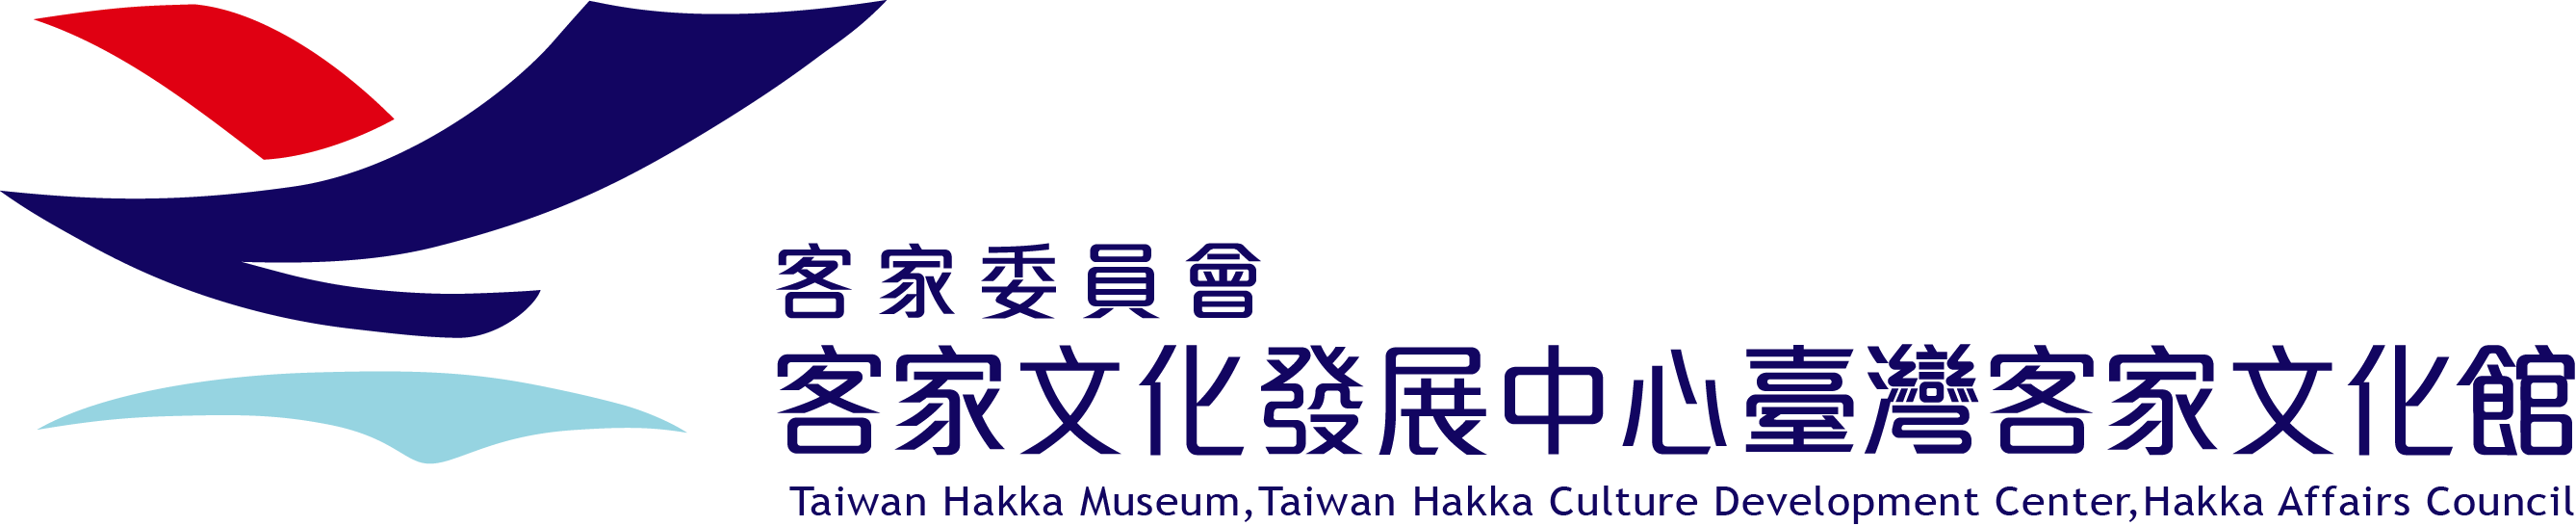 臺灣客家文化館英文網 logo